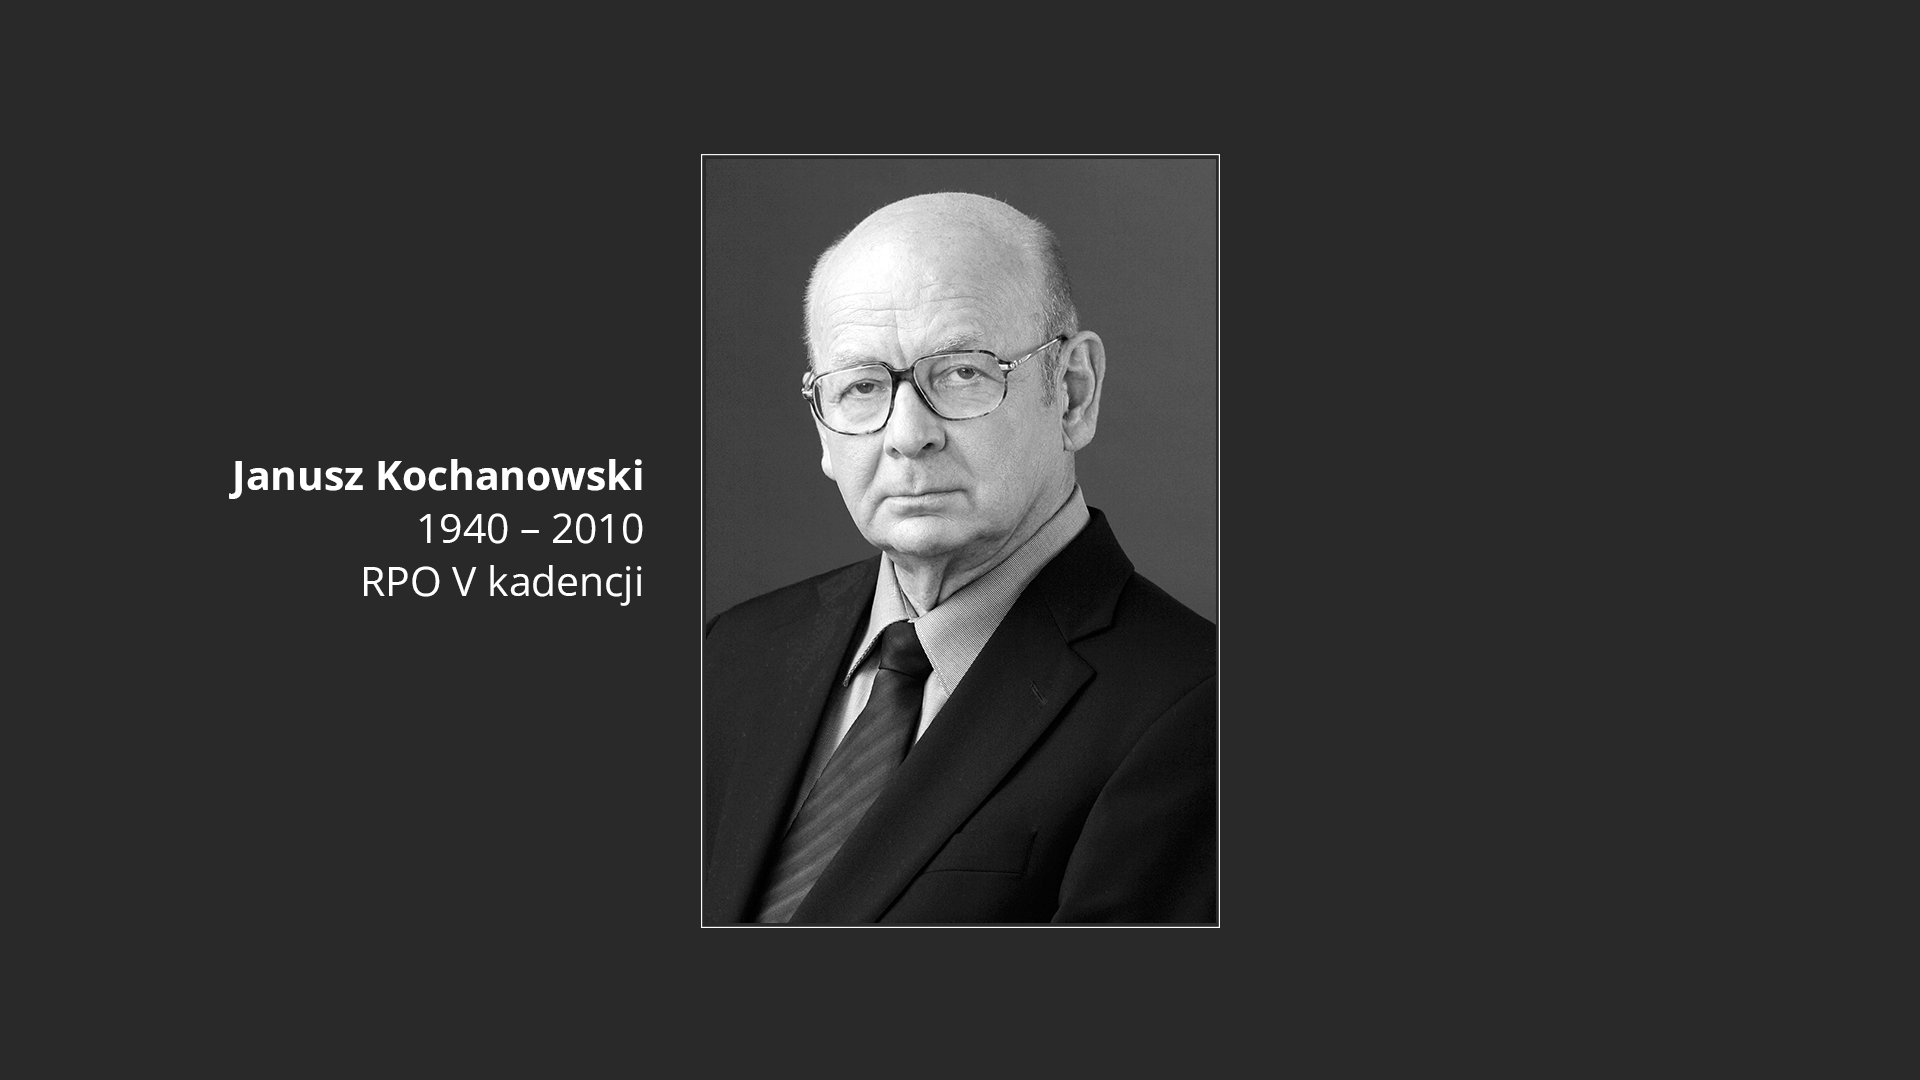 Plansza z tekstem Janusz Kochanowski - 1940-2010 - RPO V kadencji i portretem Janusza Kochanowskiego